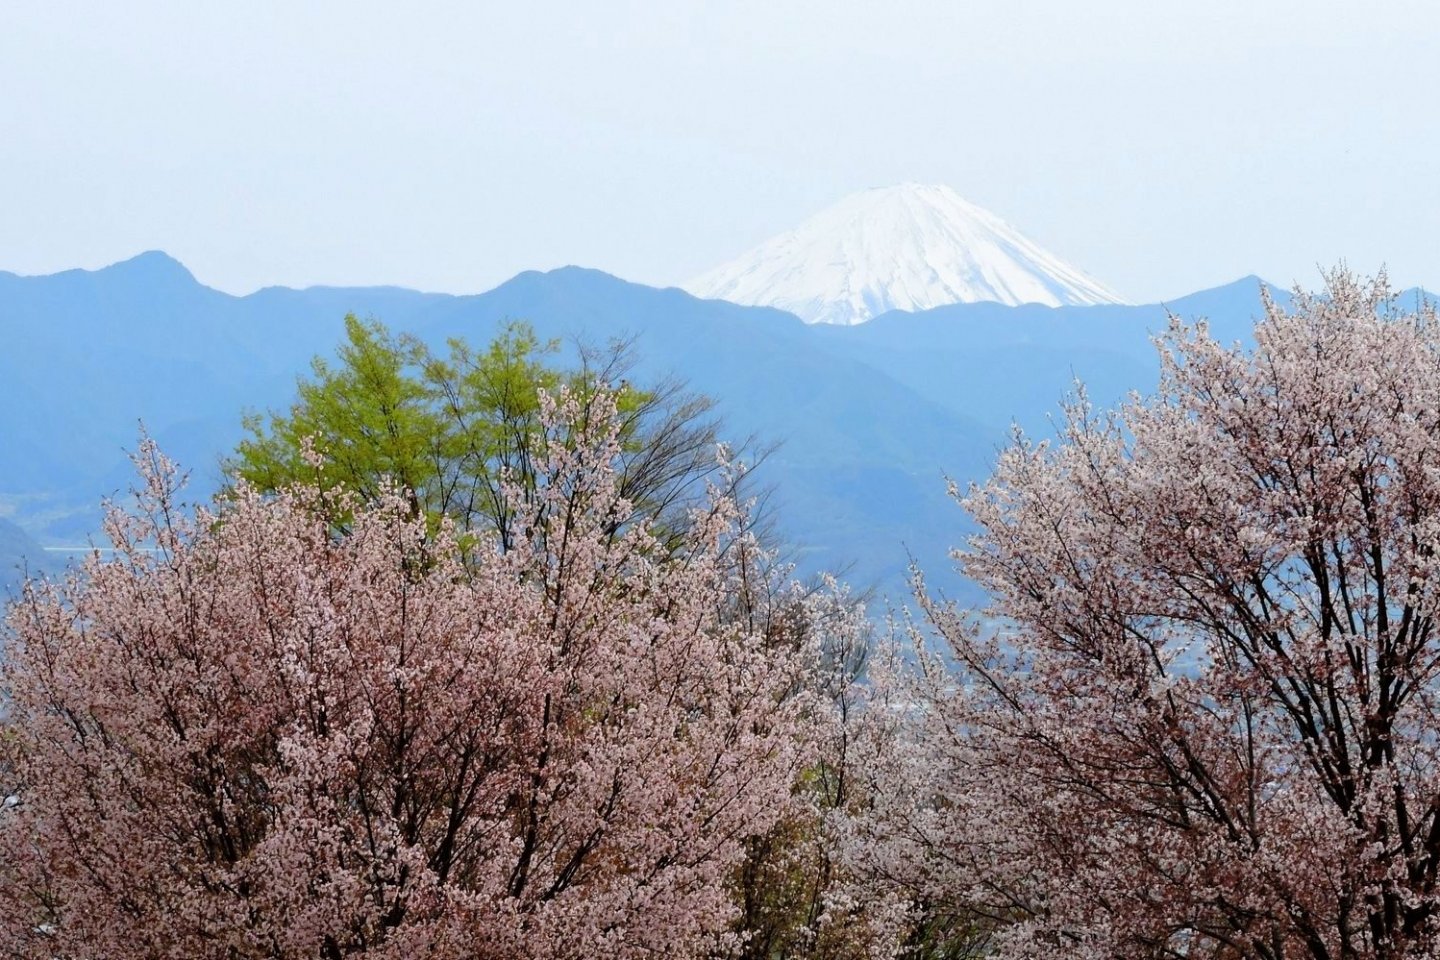 Hoa anh đào, núi non xanh biếc và núi Phú Sĩ nhìn từ đằng xa